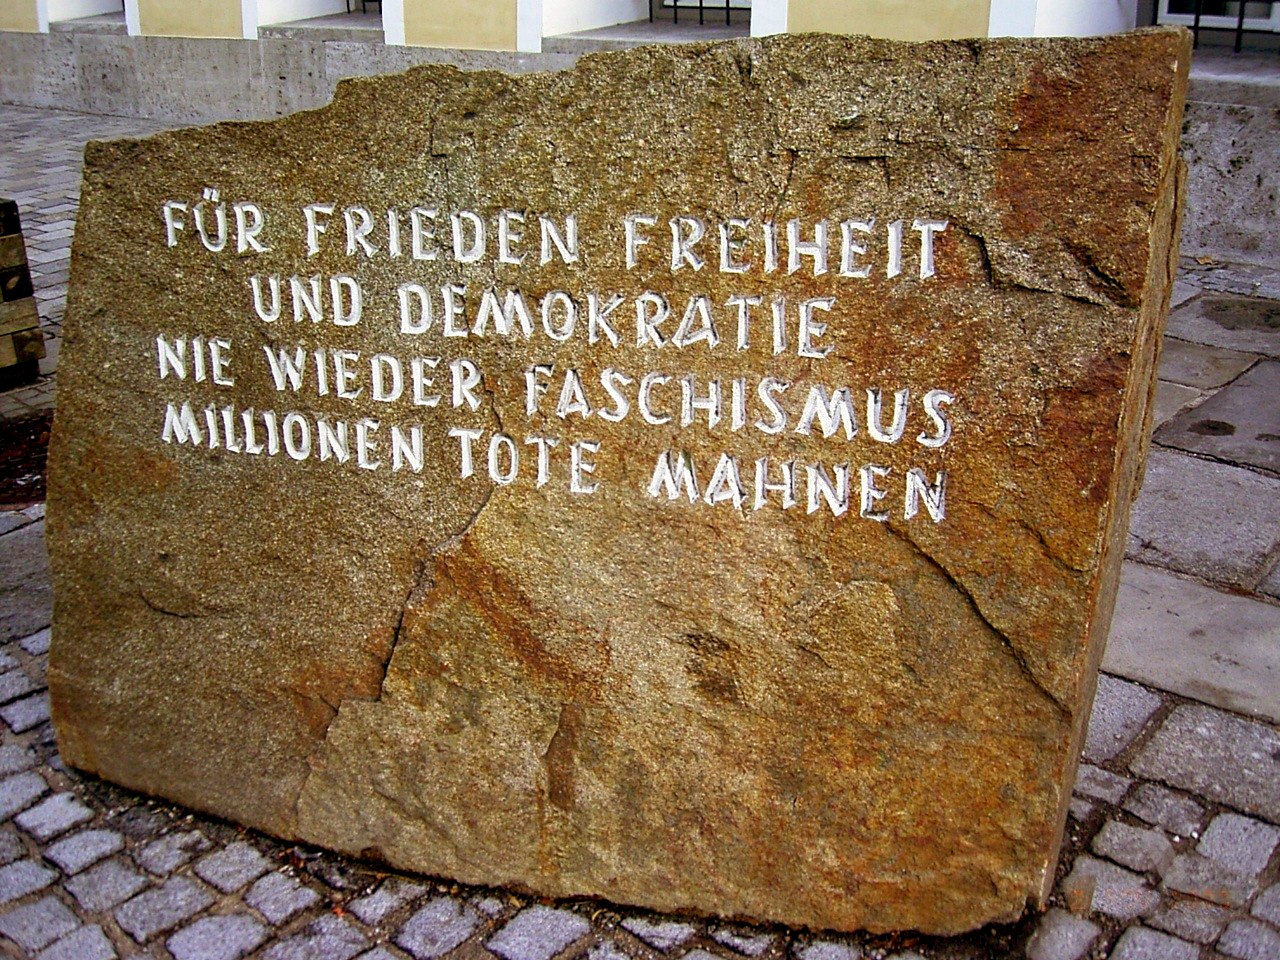 Надпись на камне, который скоро отправят в музей, гласит: «За свободу, мир и демократию. Фашизм не должен повториться. Миллионы убитых взывают к нам».